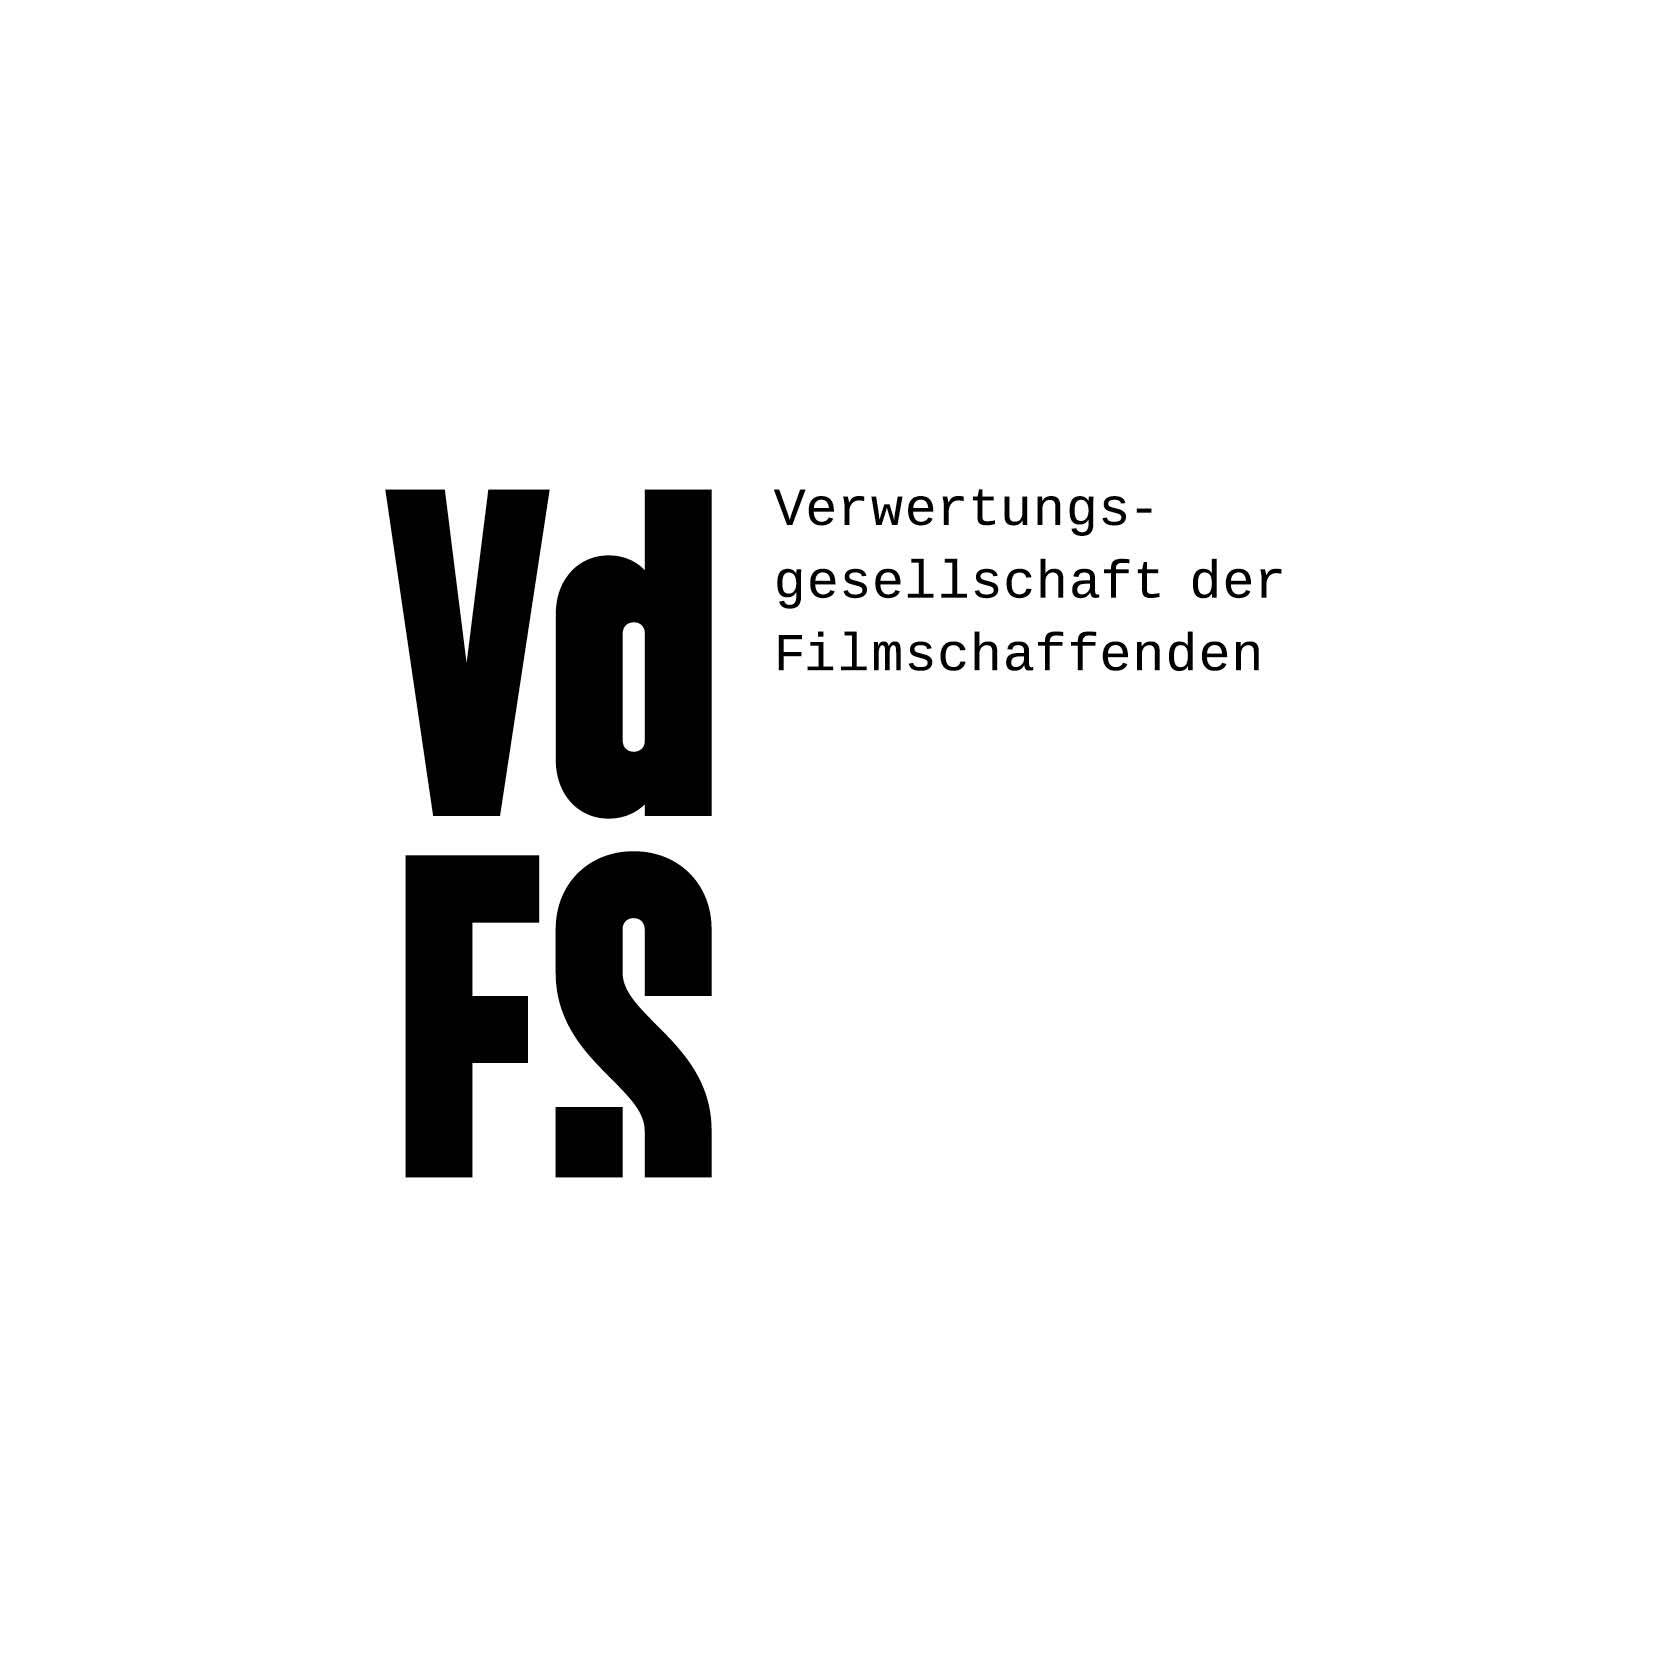 Foerderer_Fördernde Mitglieder_VDFS_logo